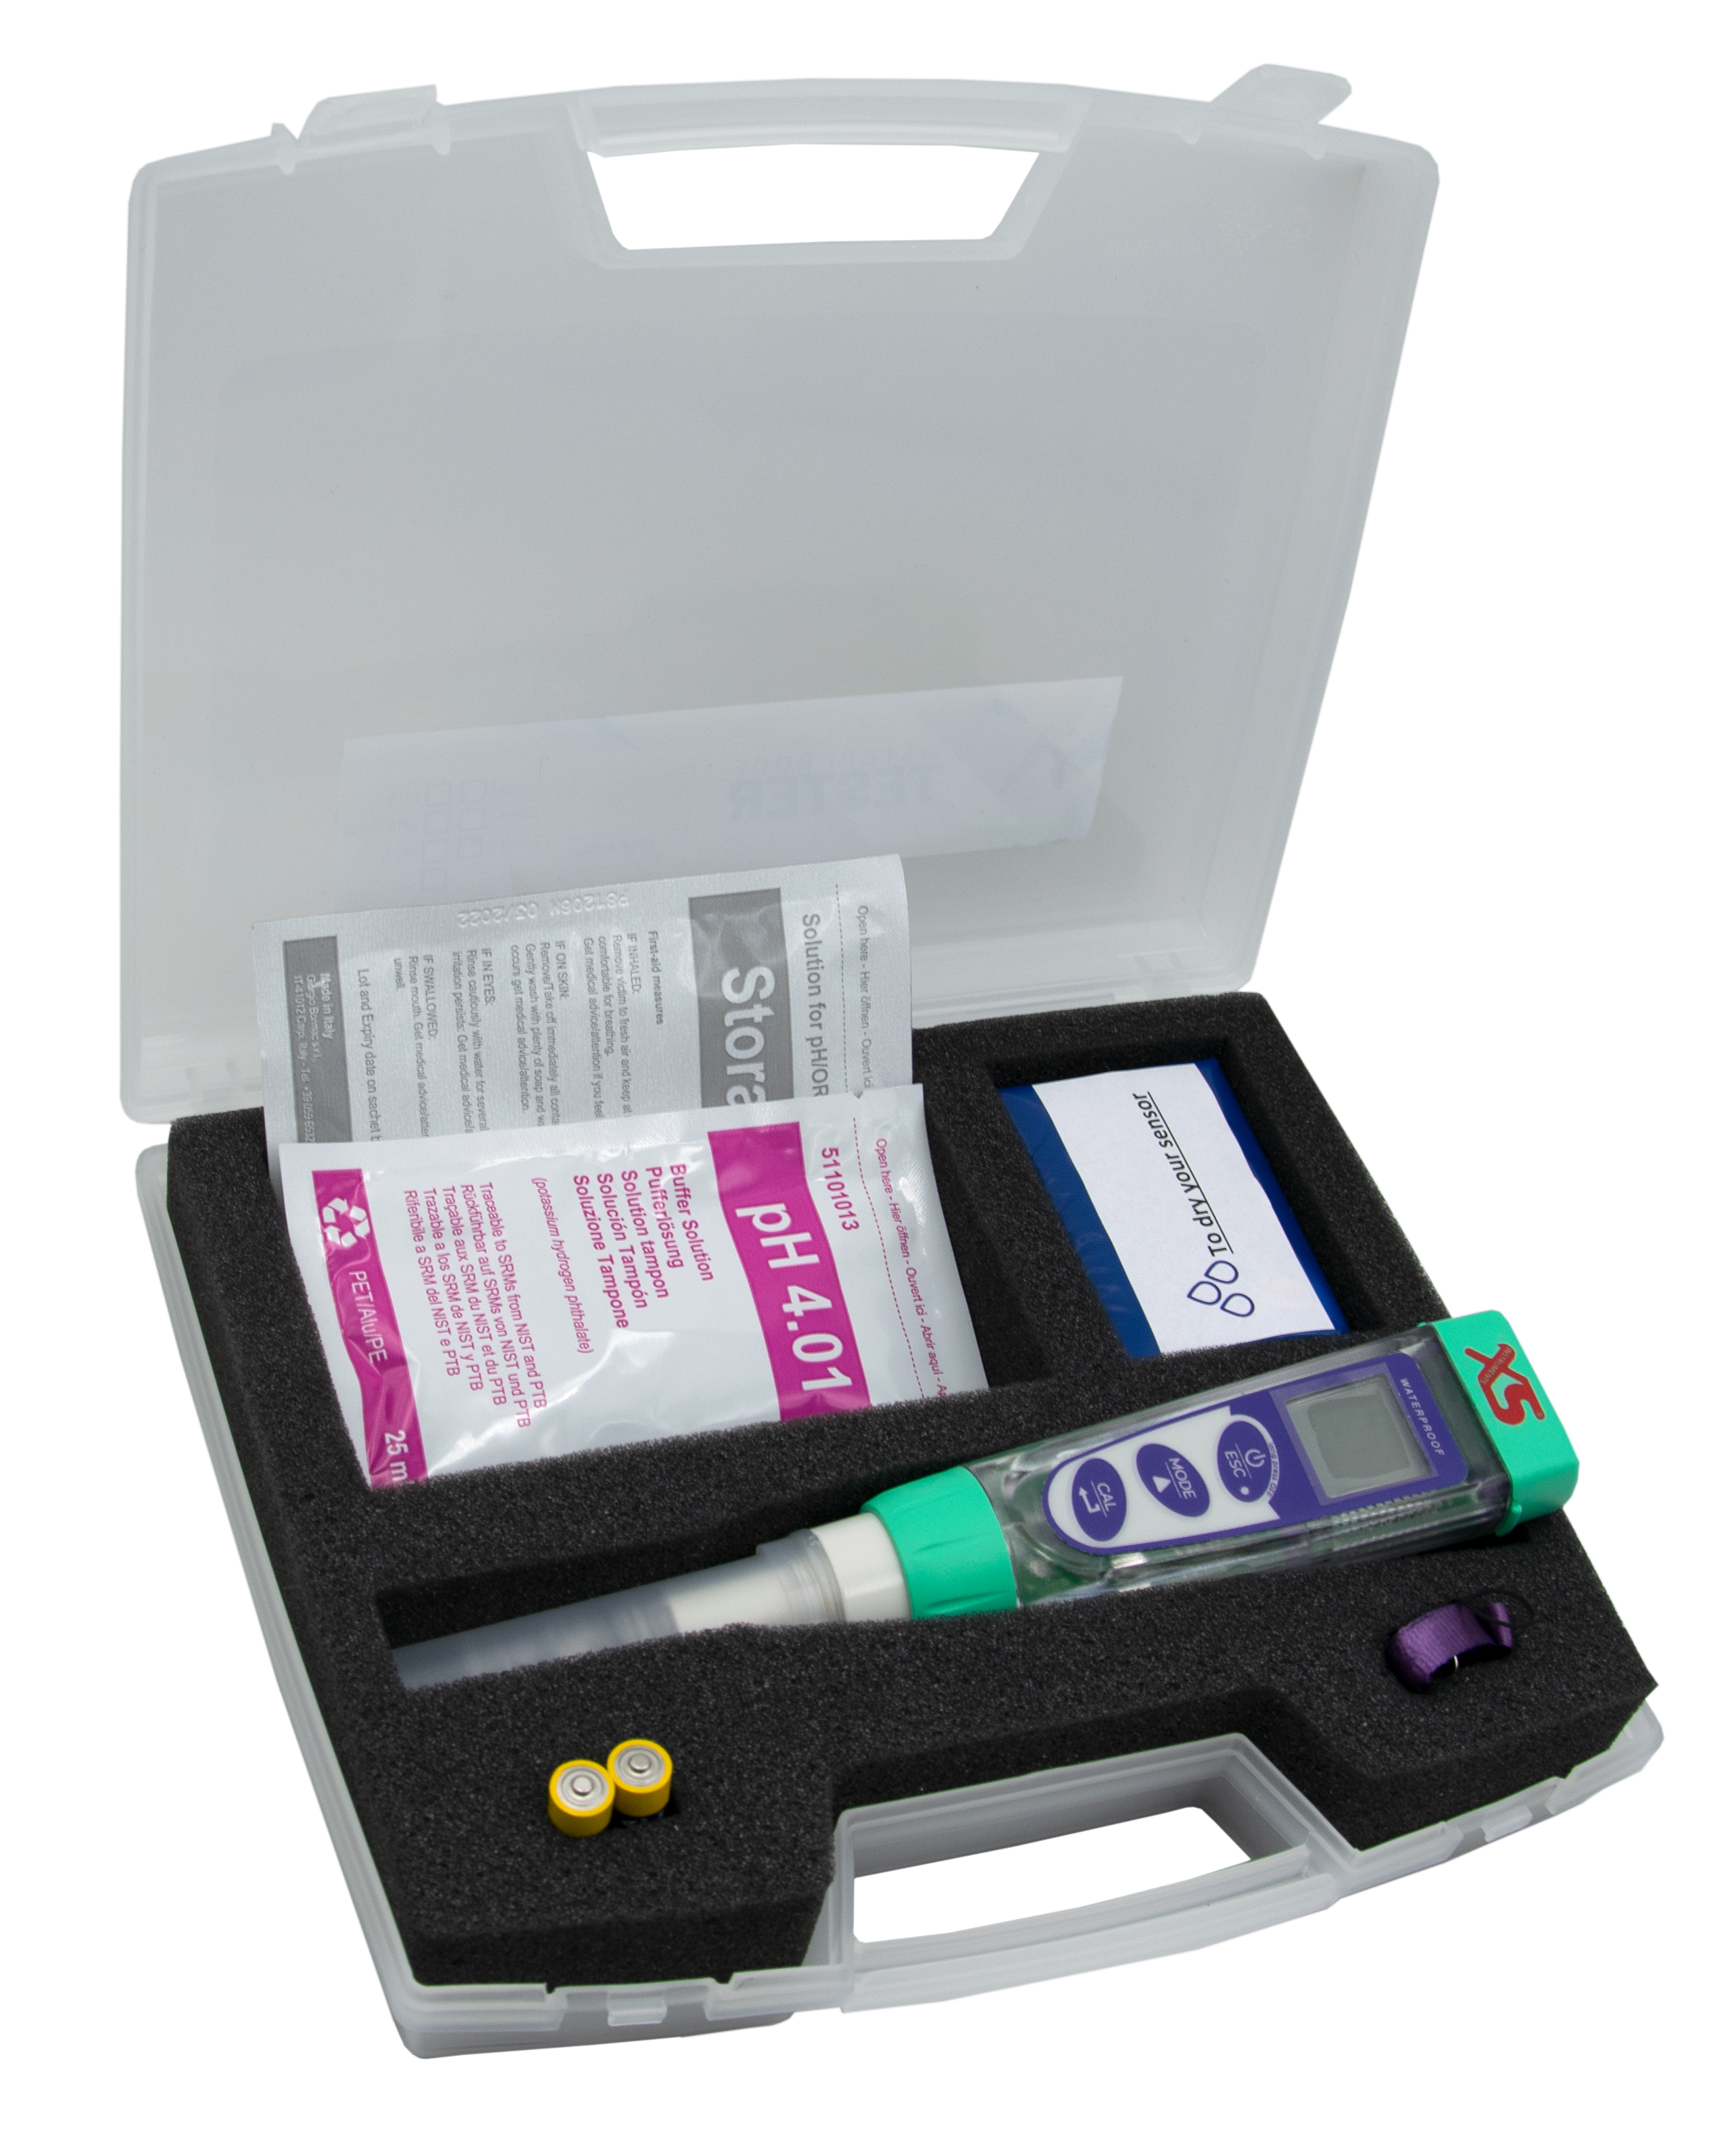 XS pX 4 Tester im Tragekoffer  -  Handmessgerät zur pH/Redox/Temperatur Messung